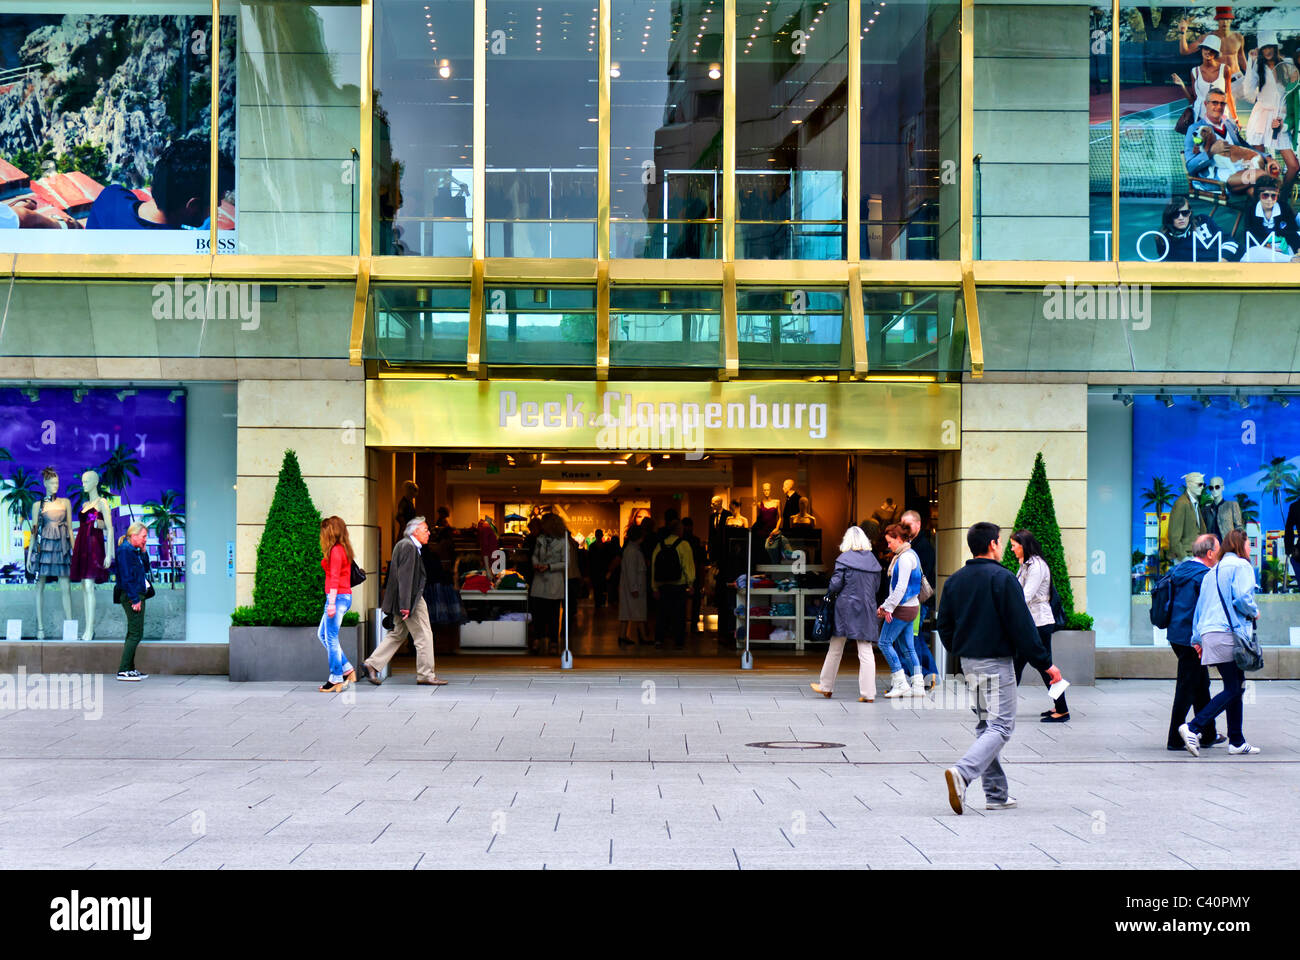 Peek.Cloppenburg Store im Zentrum von Frankfurt, Deutschland Stockfoto